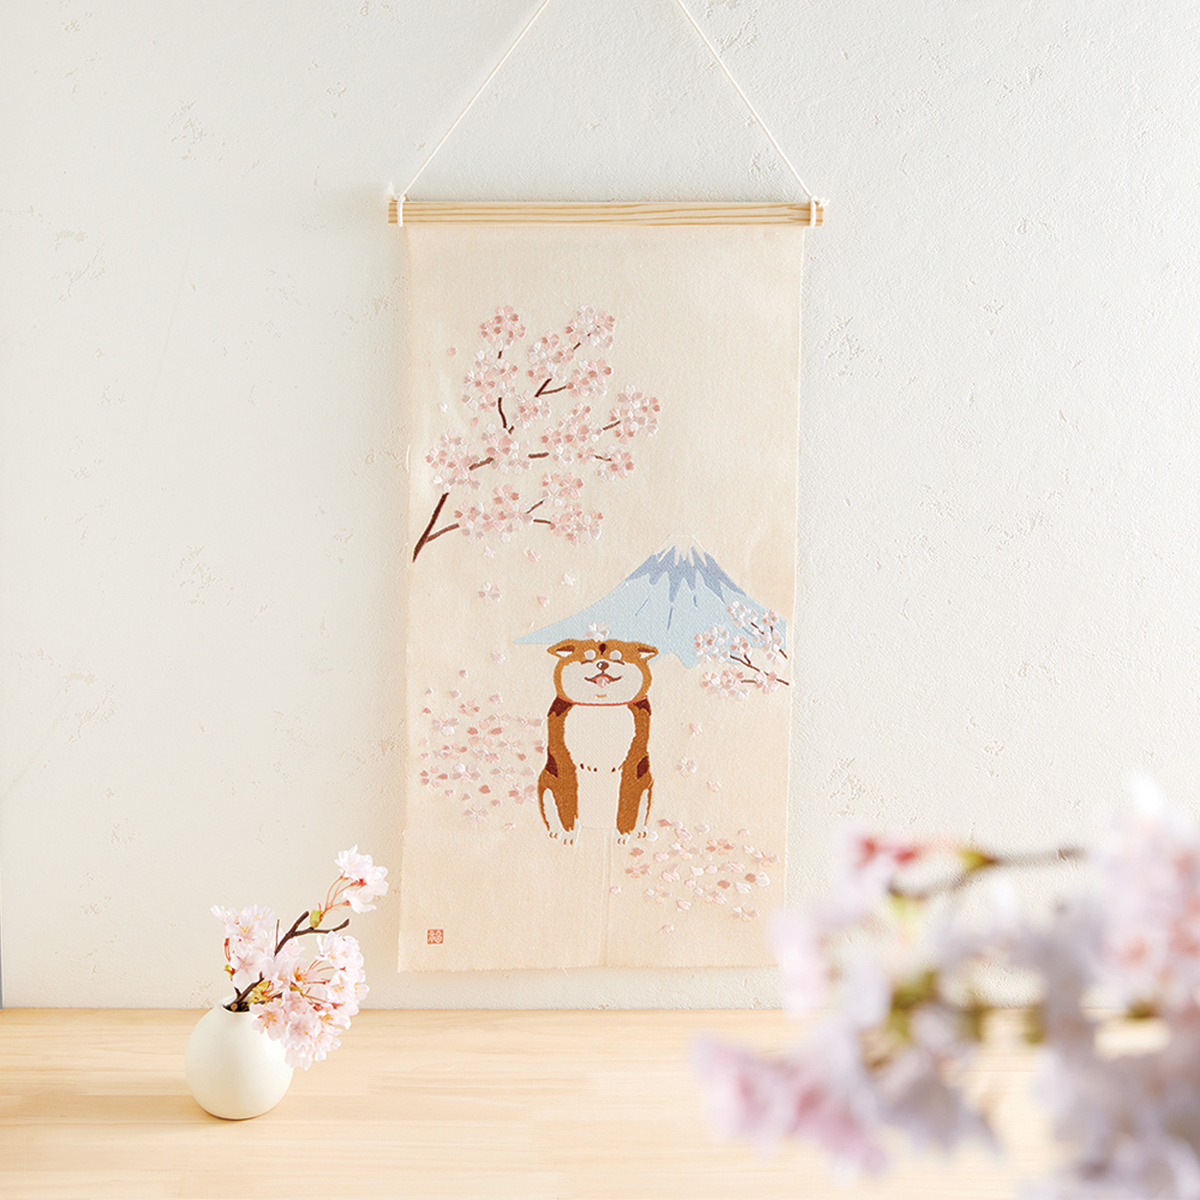 【空間を華やかに彩る】刺繍タペストリー 桜富士 柴犬 ジャパネスクモチーフ